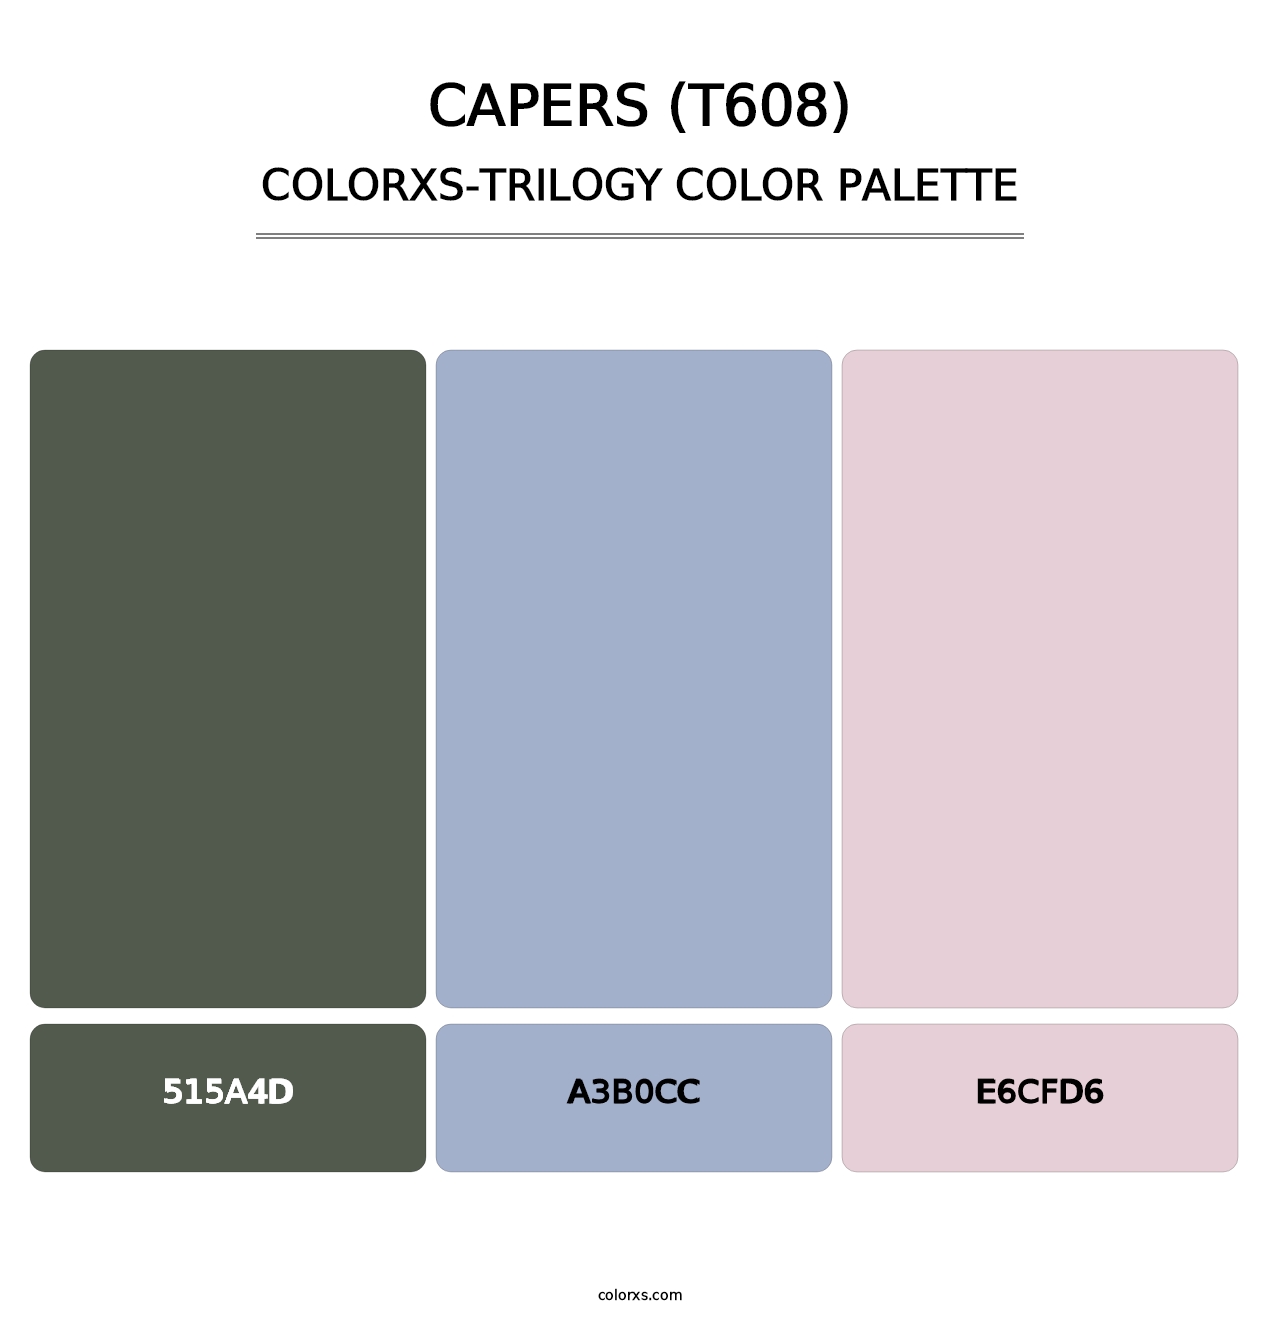 Capers (T608) - Colorxs Trilogy Palette